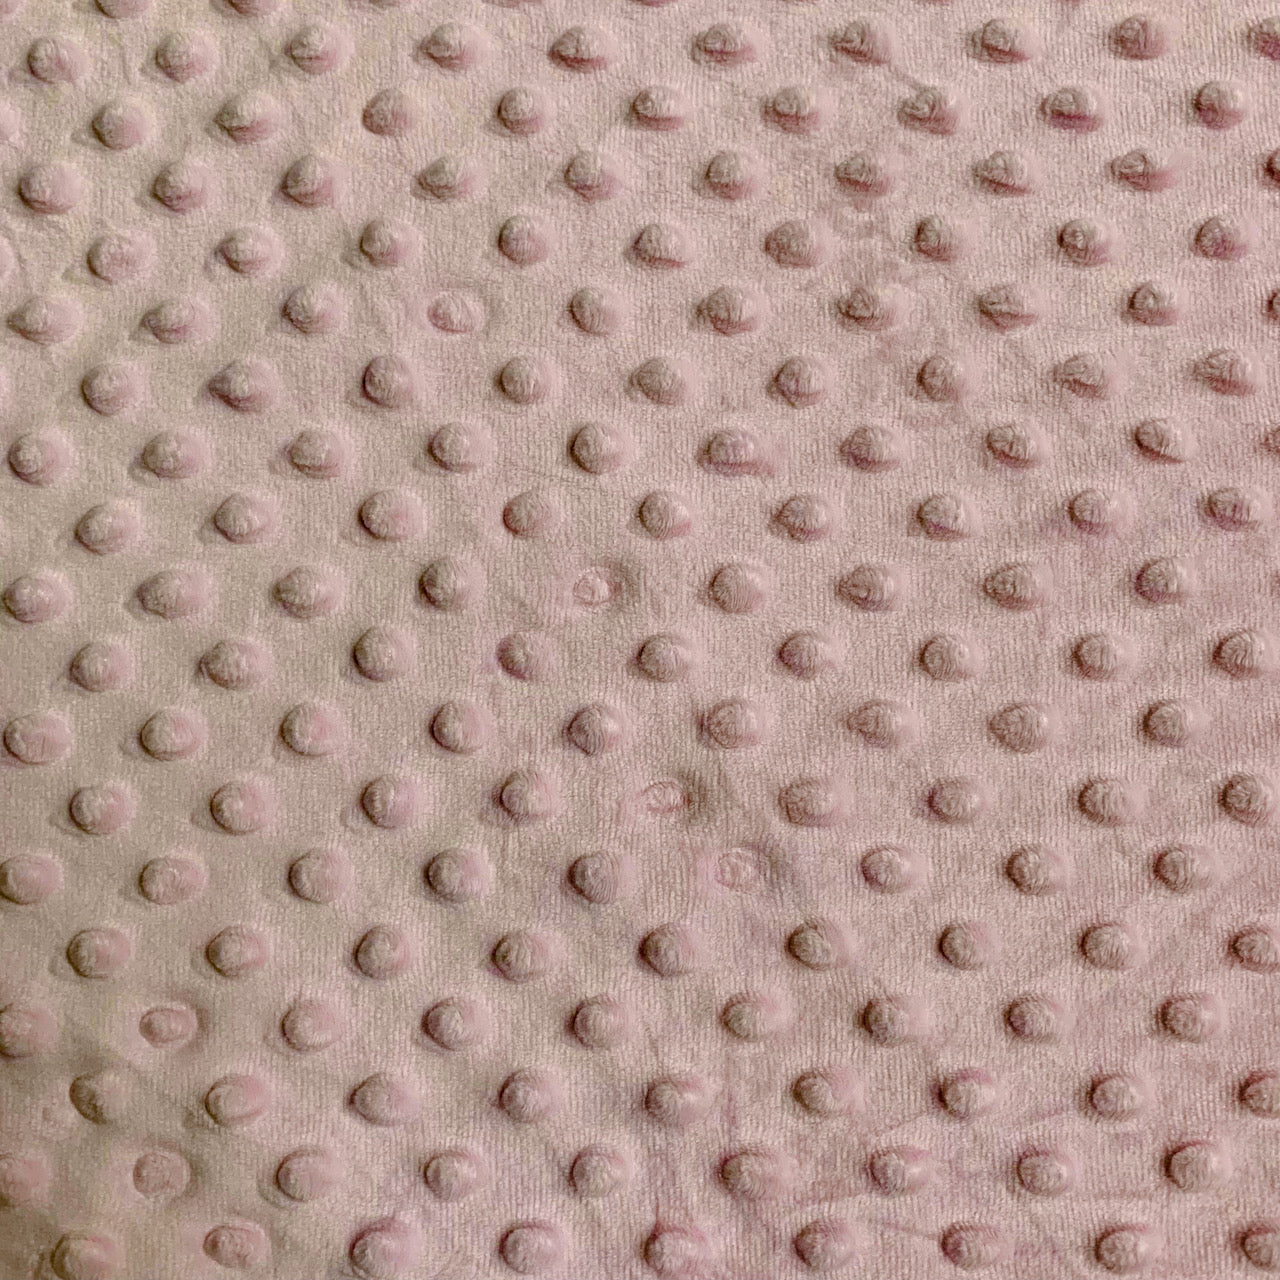 Dimple Fleece - Baby Pink